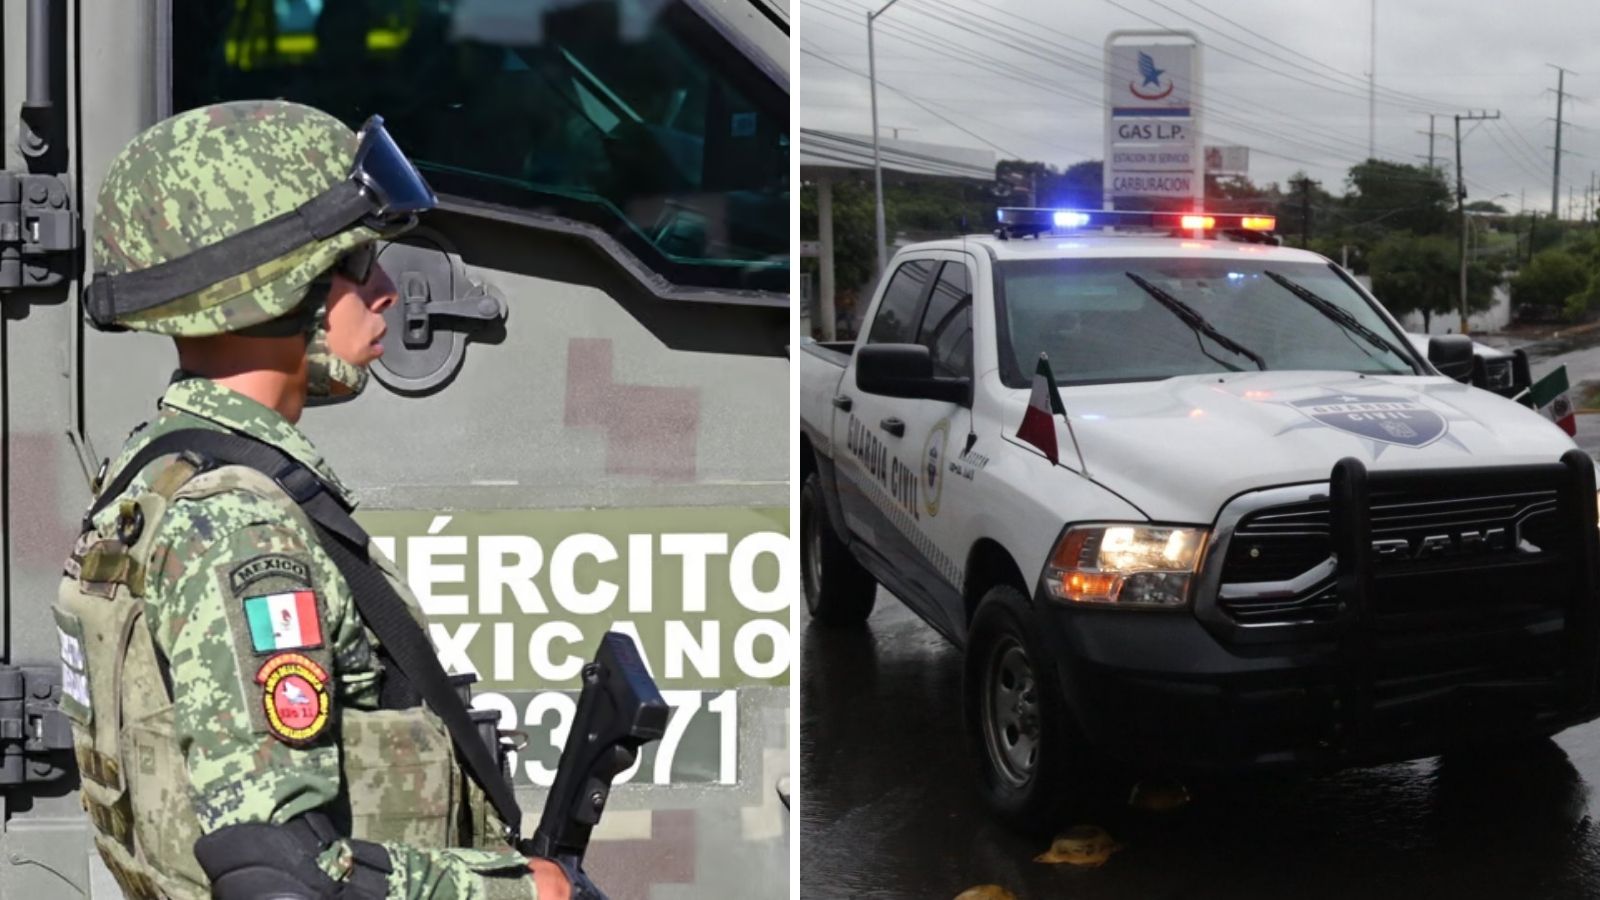 Sedena ejército mexicano reforzar seguridad michoacán